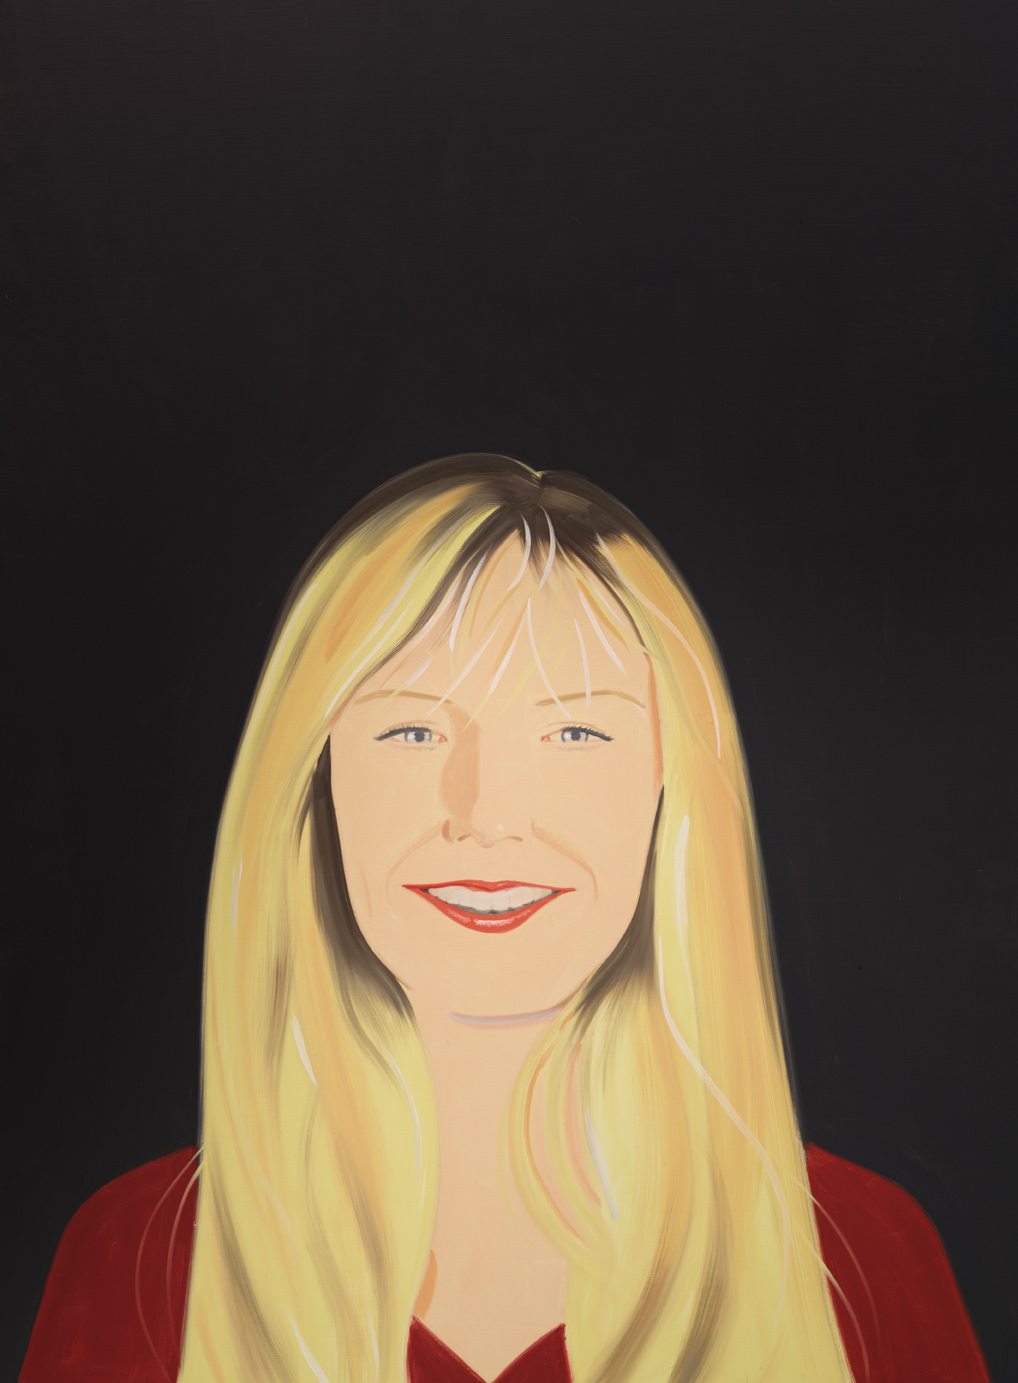 Karen sonríe | Alex Katz | Guggenheim Bilbao Museoa